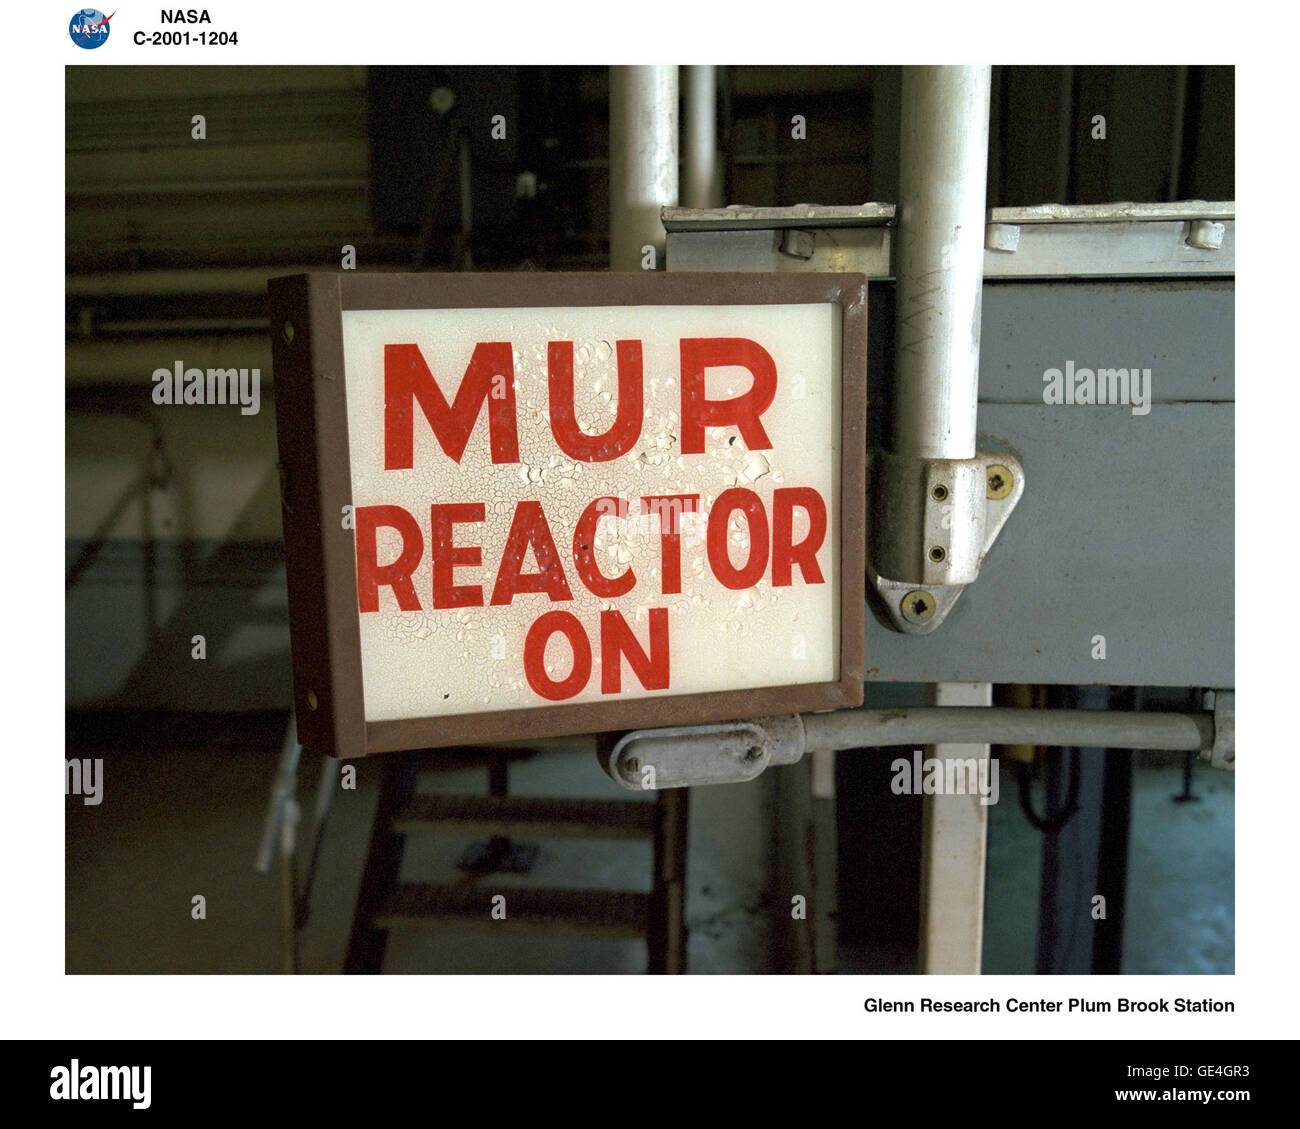 Il reattore Mock-Up (MUR) era un 100-reattore di chilowatt installato nell'edificio del reattore per esperimenti a bassa potenza prima di inserirle nel più potente di sessanta-megawatt di reattore. Ciò ha consentito agli operatori di determinare la migliore posizione per gli esperimenti e inoltre li hanno aiutati a comprendere gli effetti di ogni schema di caricamento aveva sul flusso di neutroni. Anche se molto più piccoli e meno potenti di quella principale prugna Brook reattore il MUR richiesto proprio AEC annuale/NRC licenza, e oggi ha un proprio piano di smantellamento. Immagine #: C-2001-01204 Foto Stock